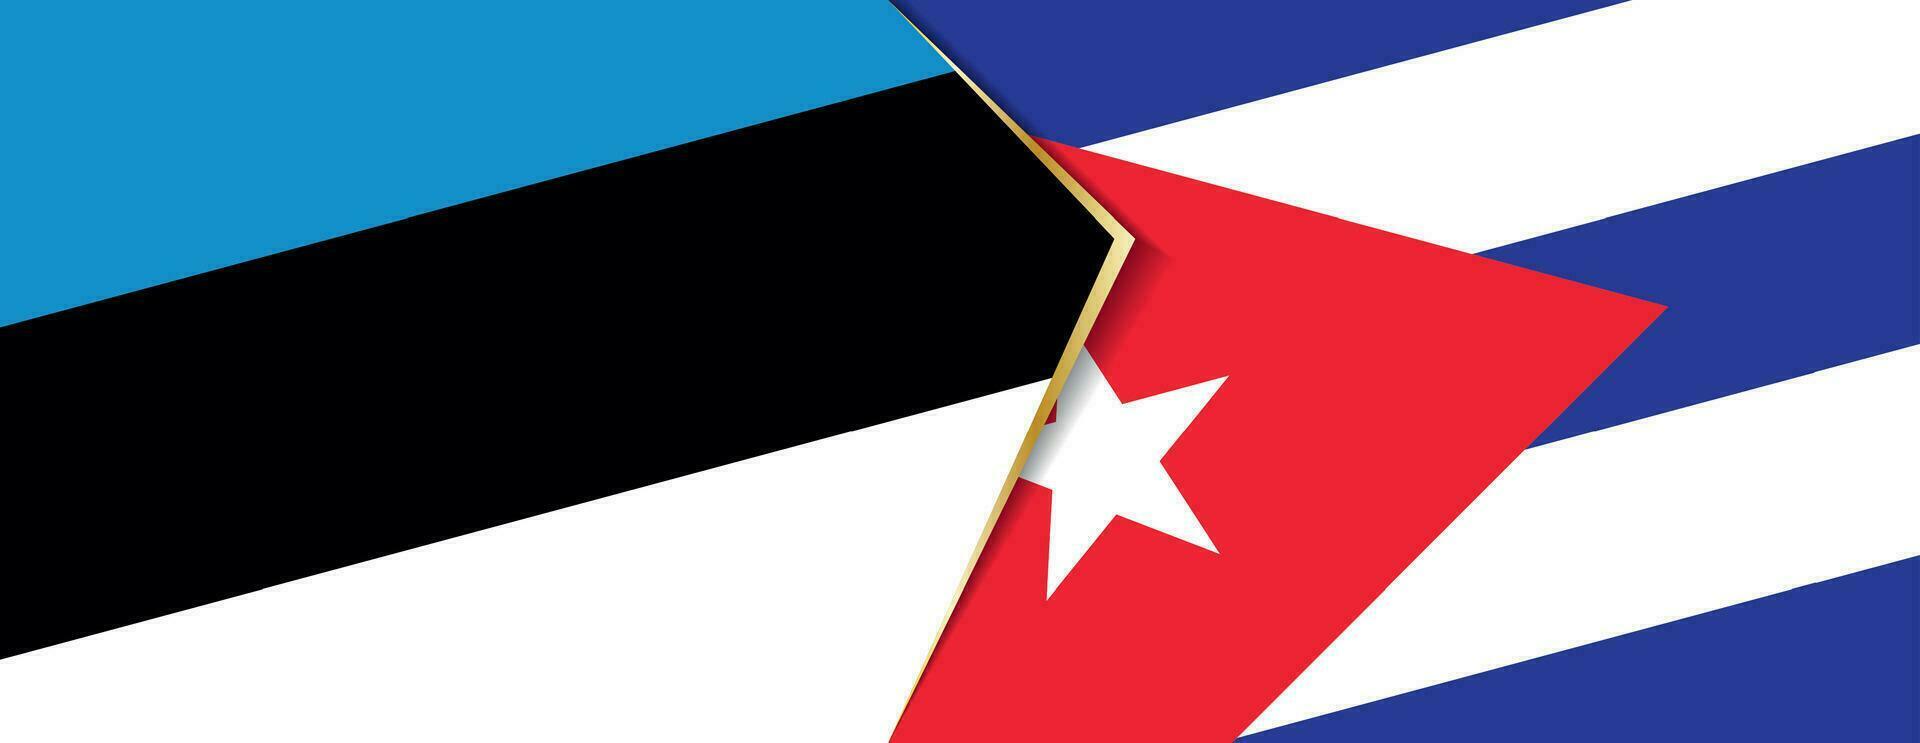 Estônia e Cuba bandeiras, dois vetor bandeiras.